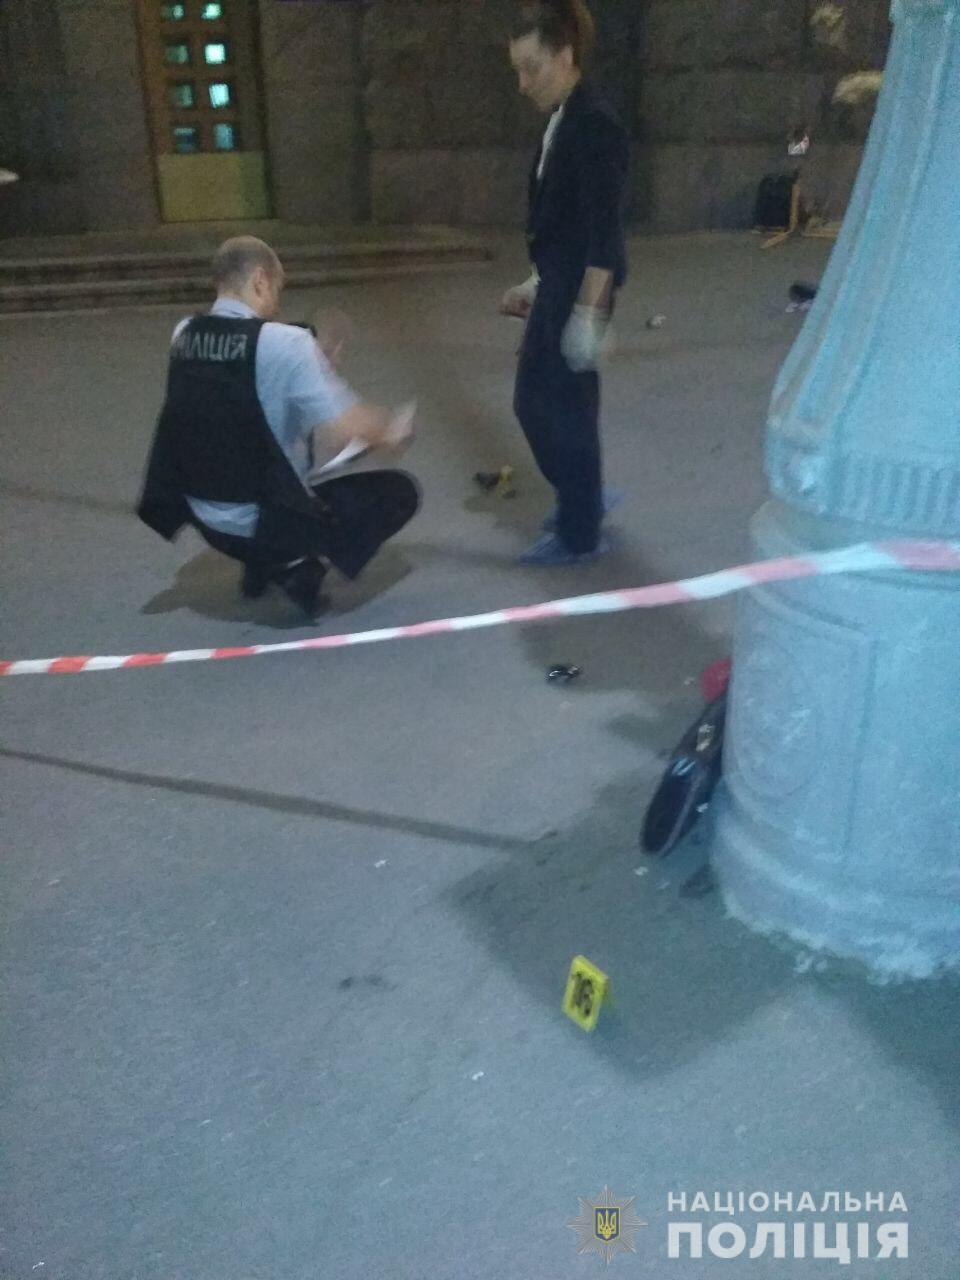 Нападение на мэрию Харькова: убит полицейский - фото, видео